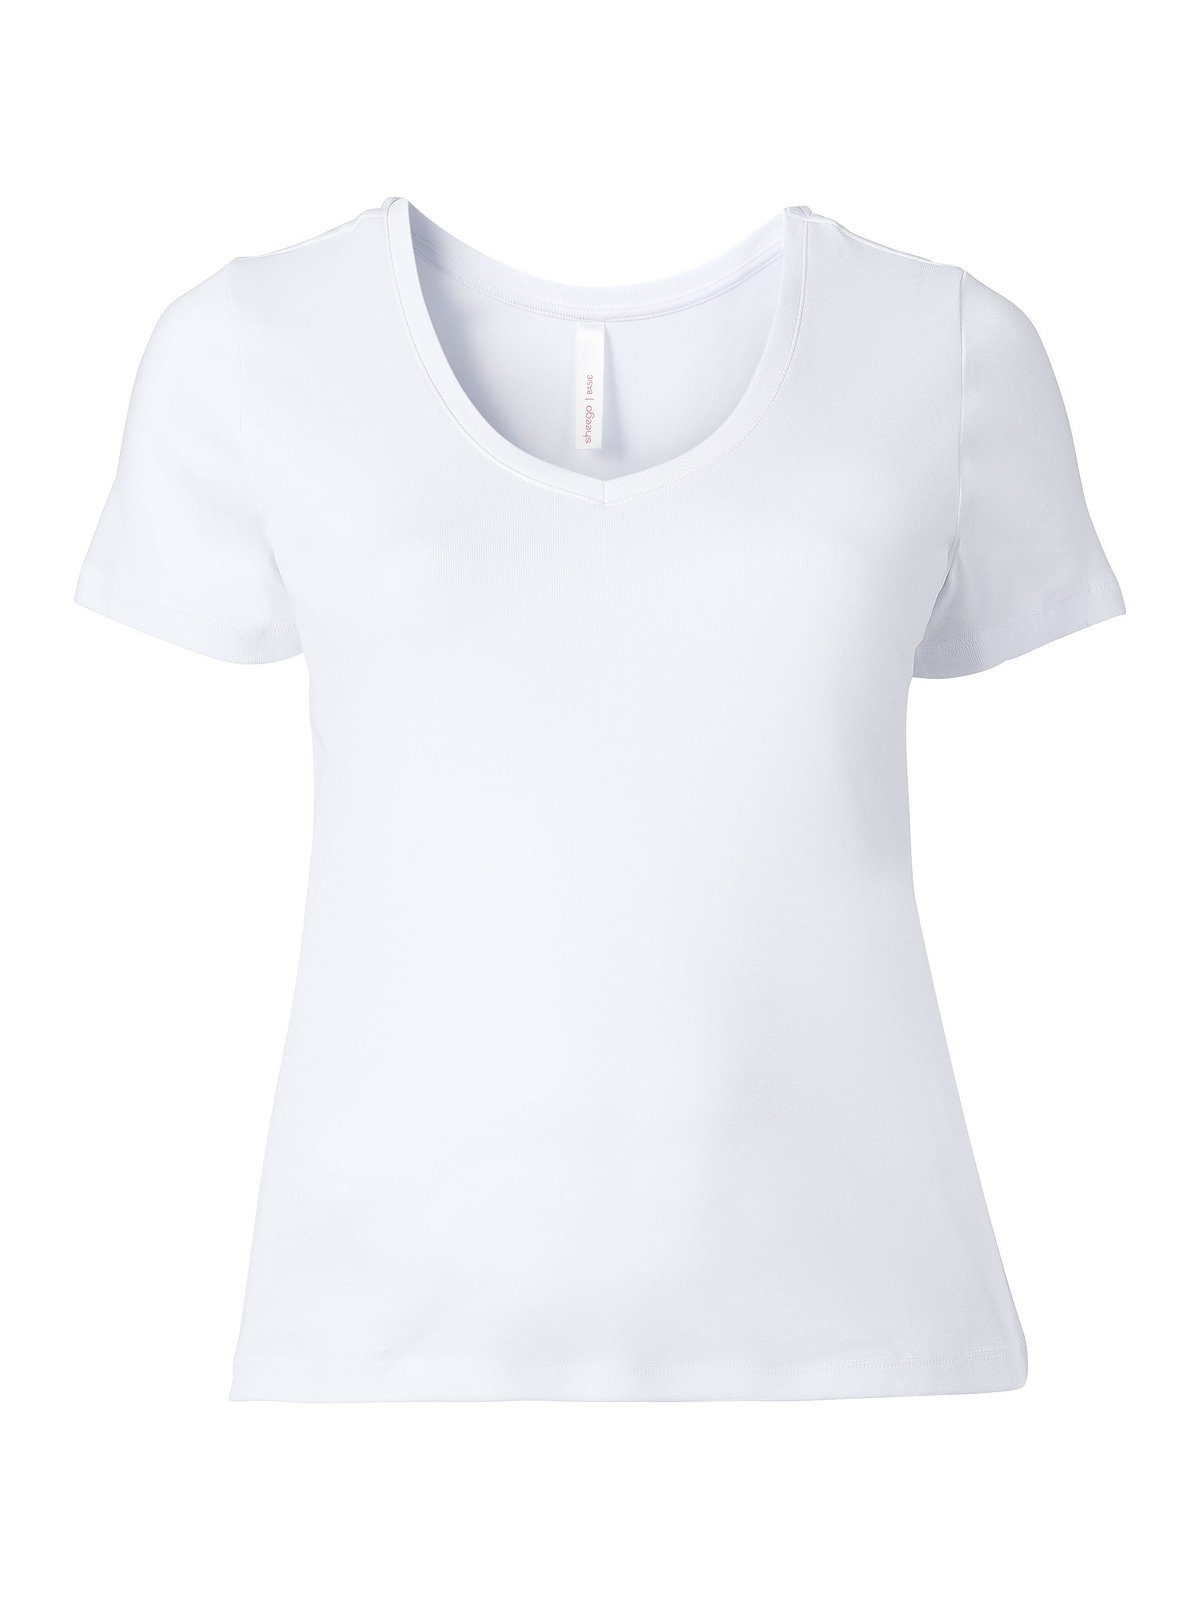 Sheego T-Shirt Große aus Größen weiß Qualität fein gerippter